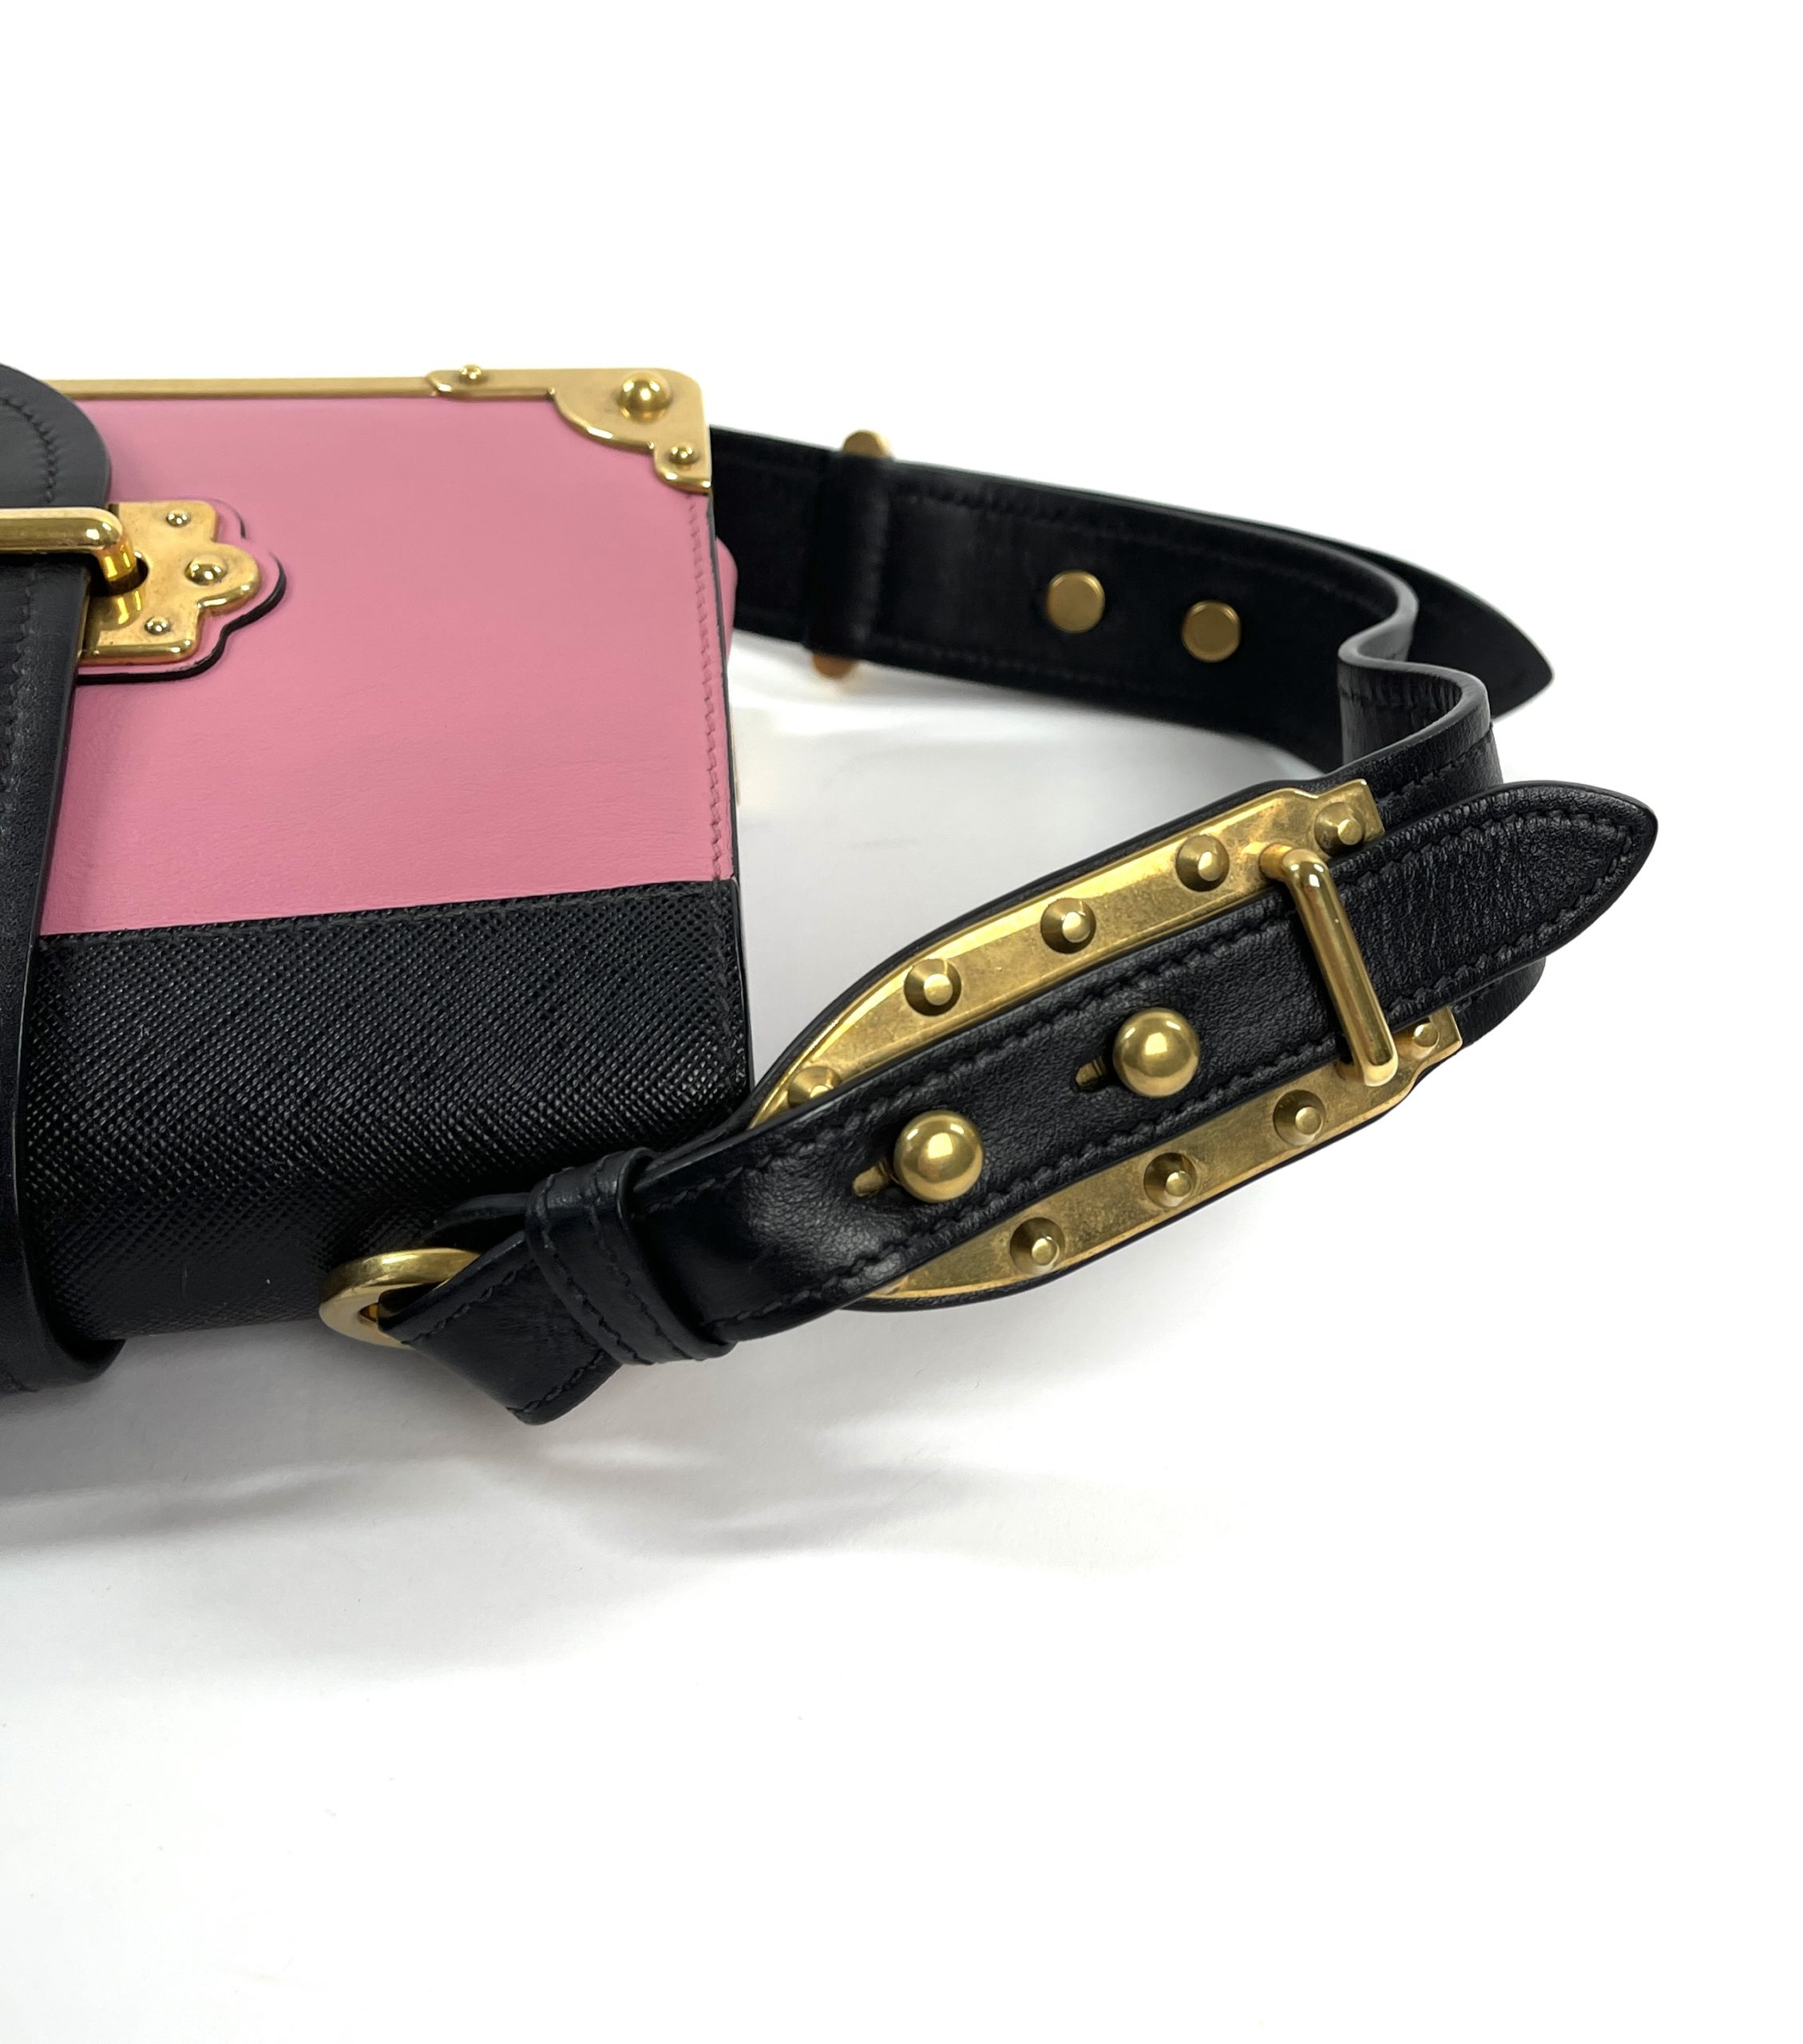 Prada Black/White Saffiano Leather Trim 'Cahier' Crossbody Bag